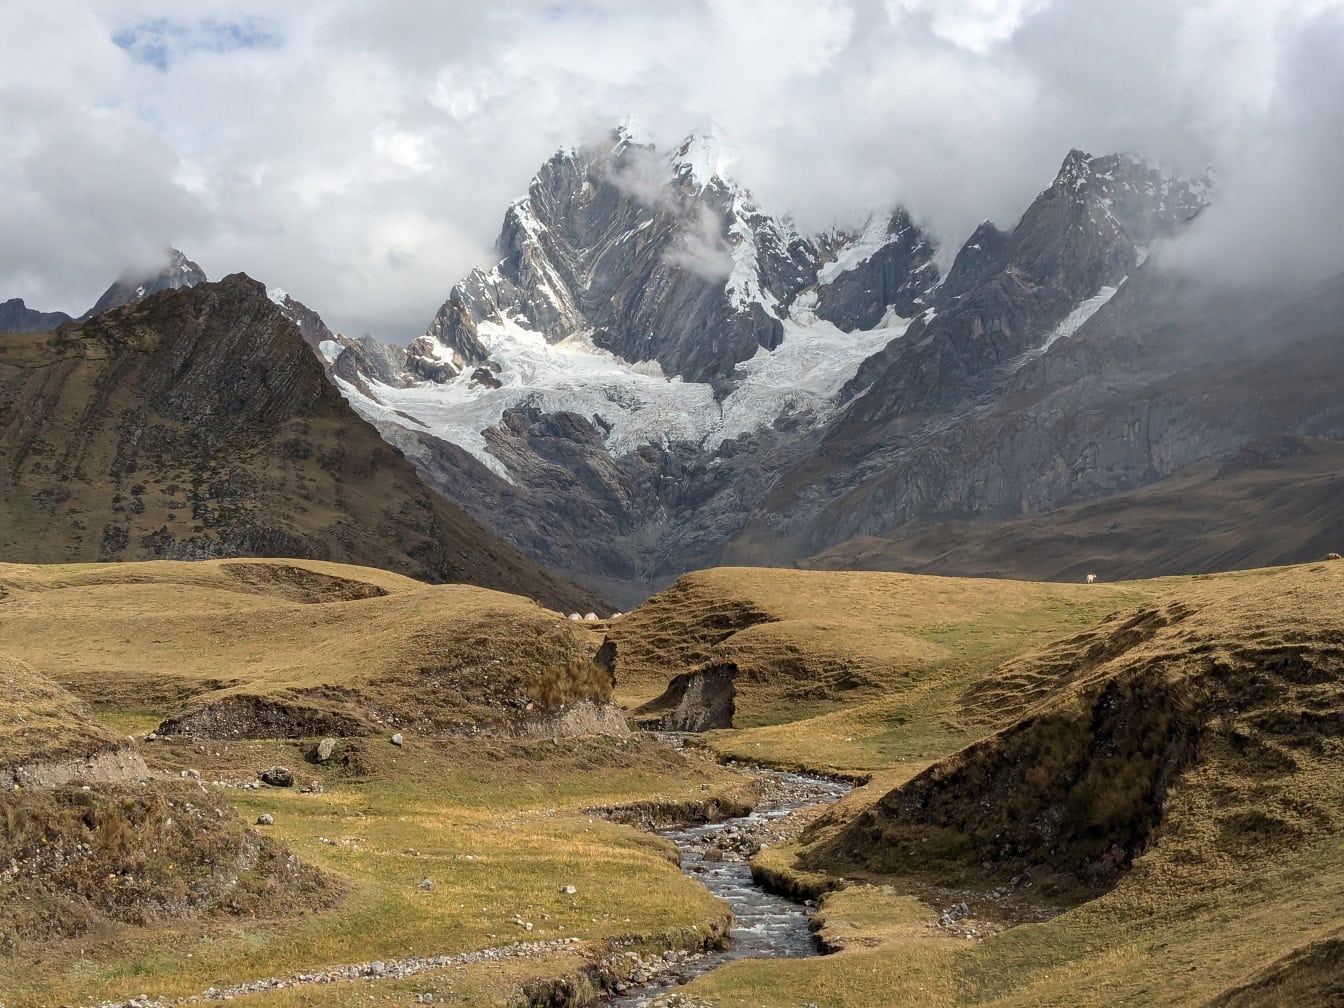 Sông núi chảy qua một thung lũng tại dãy núi Cordillera Huayhuash ở Andes của Peru với những ngọn núi ở phía sau